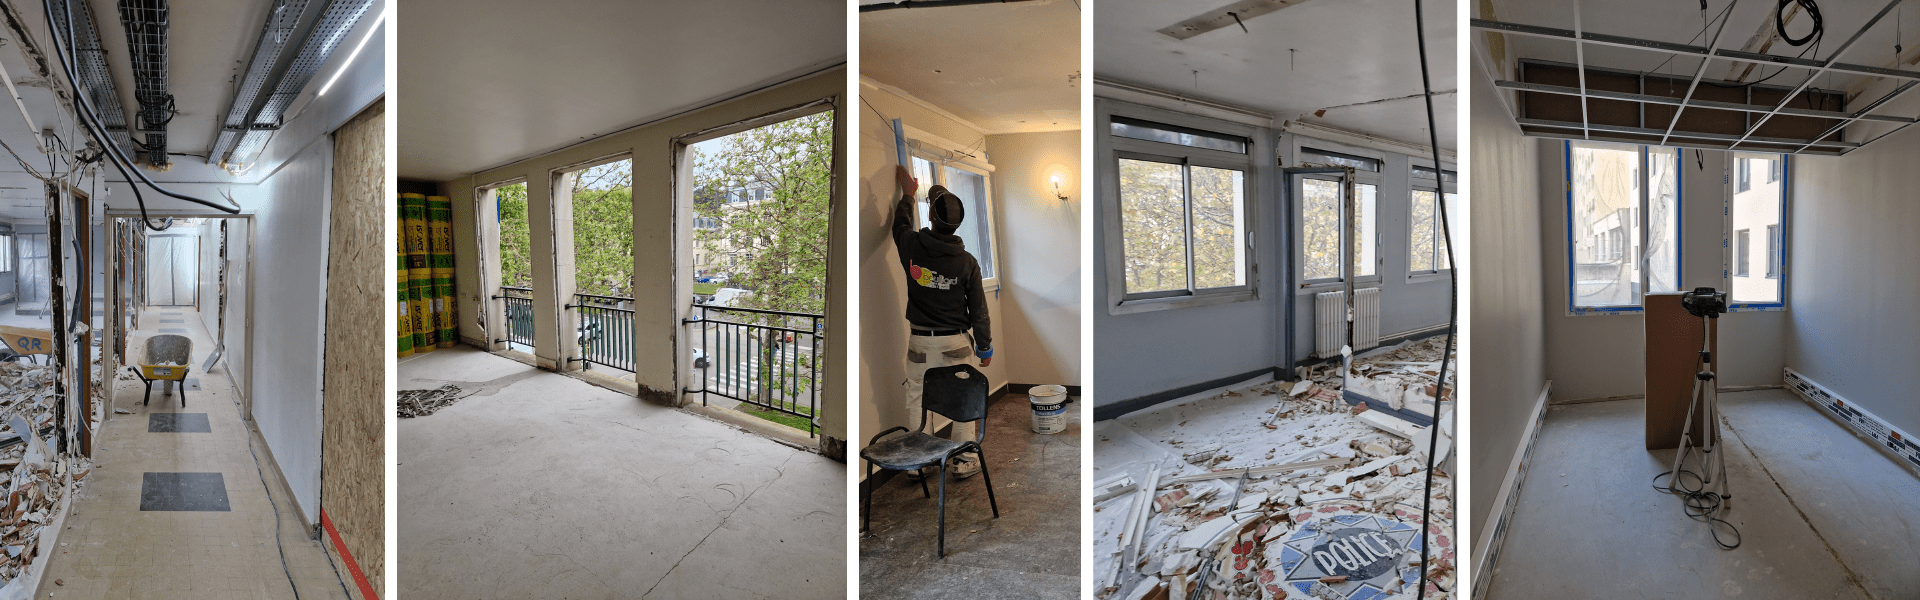 Réhabilitation de l’hôtel de police à Saint-Étienne : une réussite signée BOULLIARD